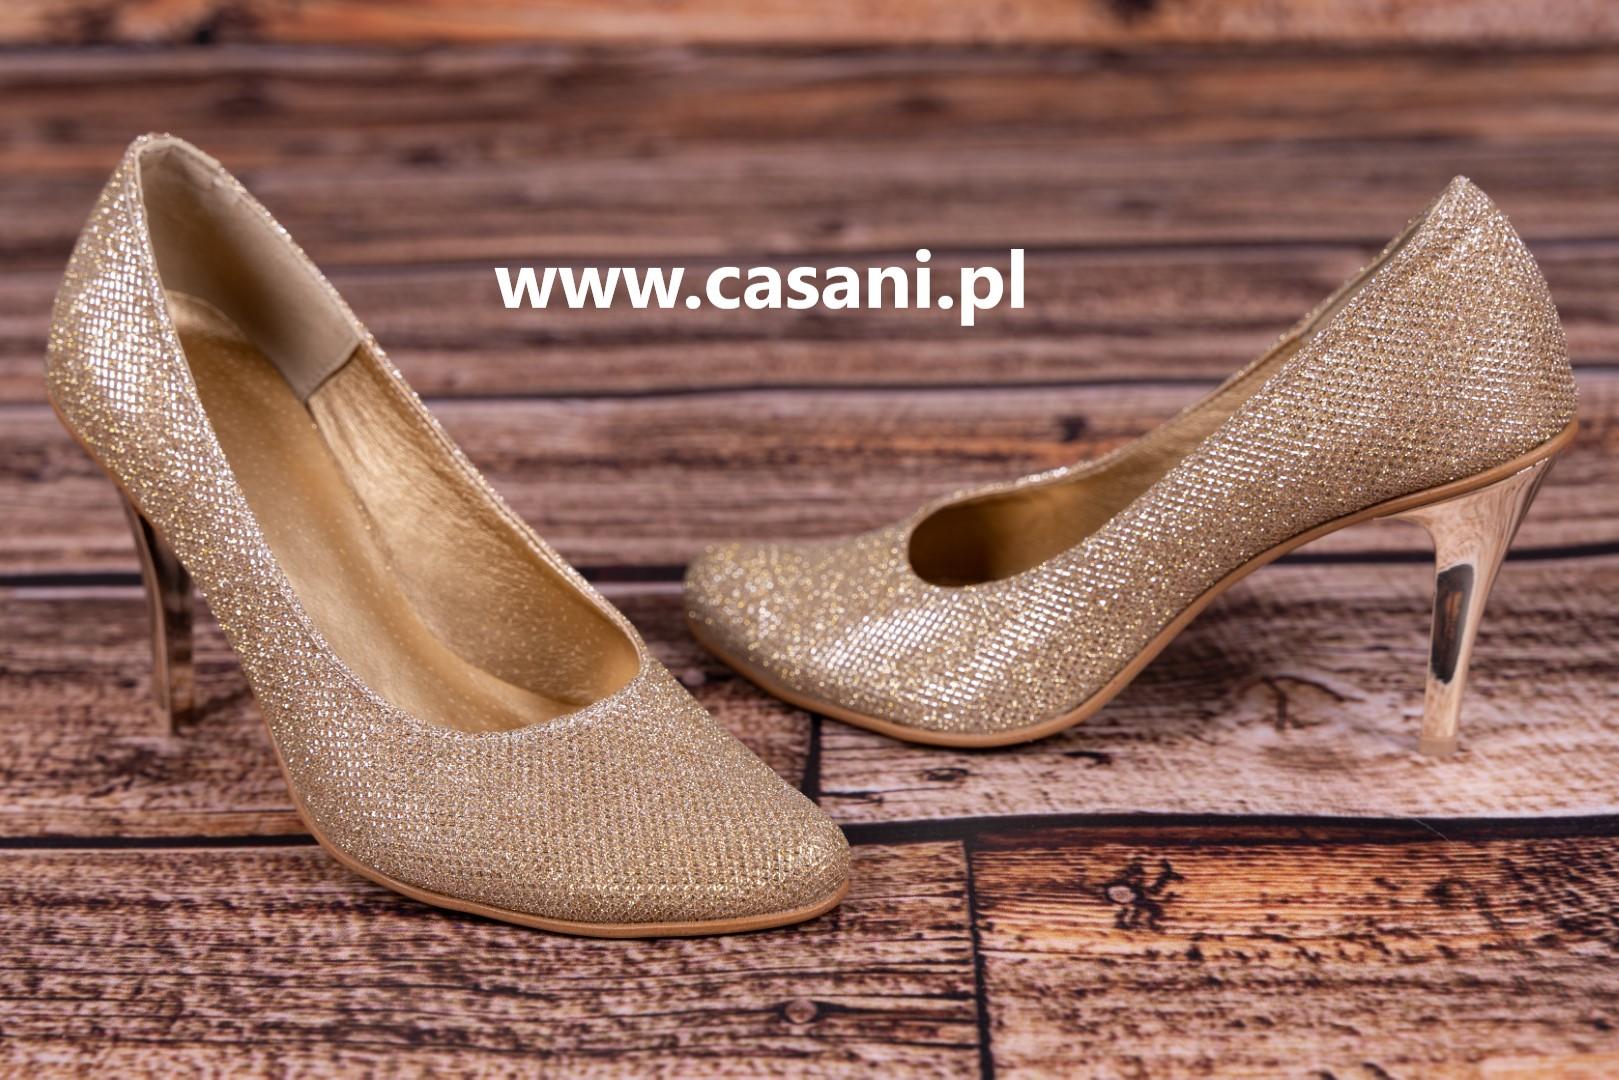 CASANI złote buty na miarę sklep internetowy  www.casani.pl